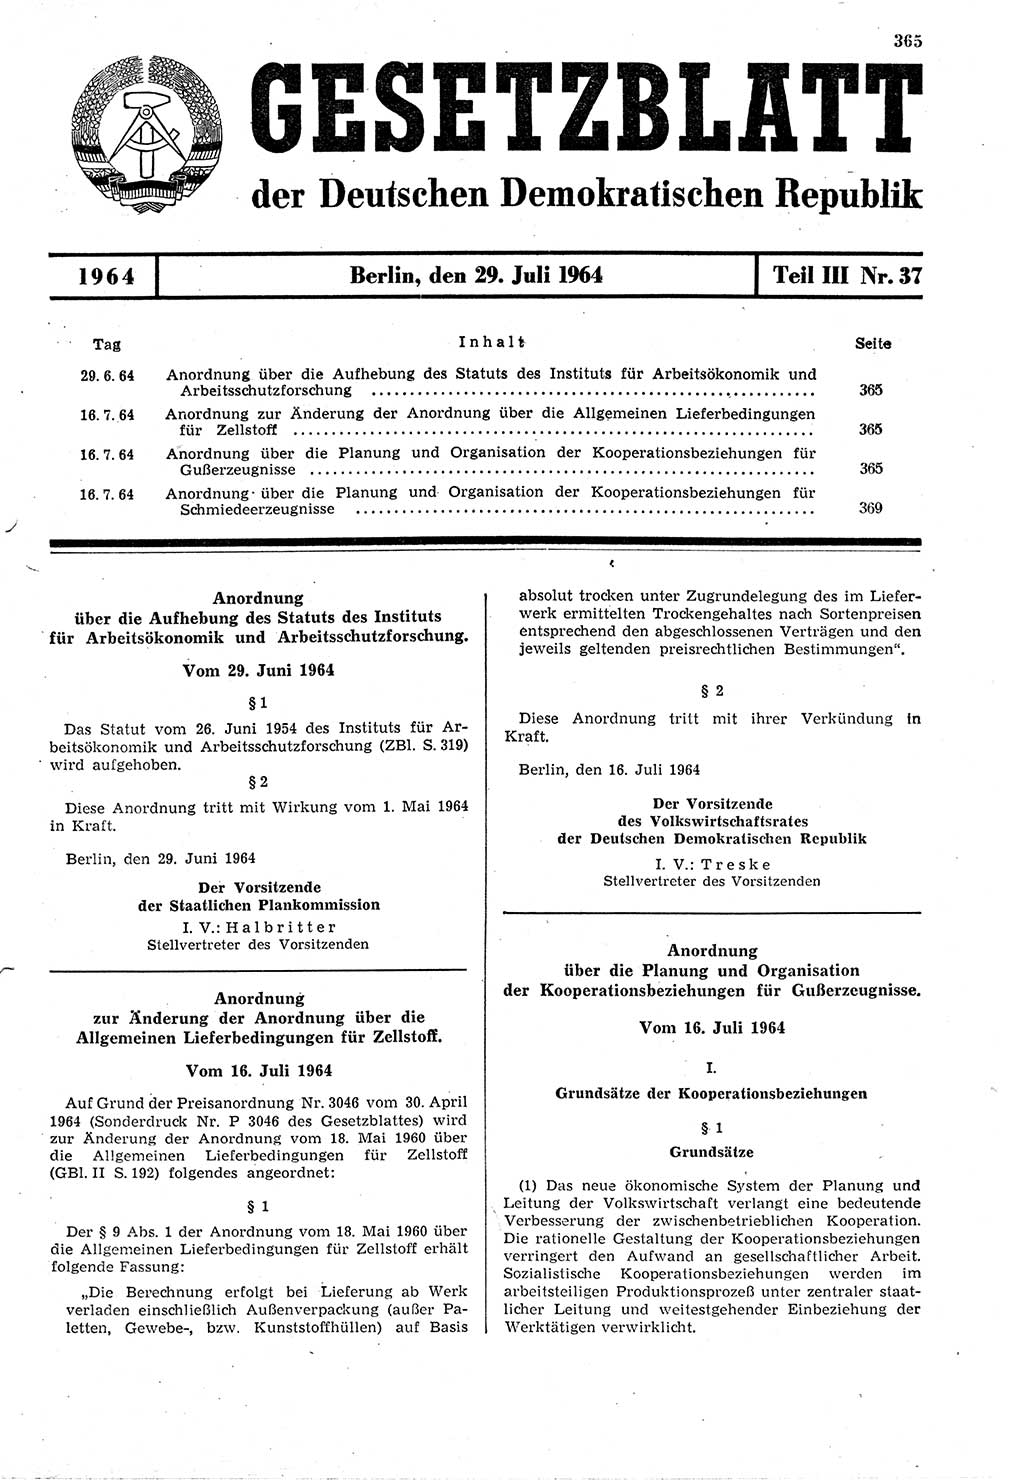 Gesetzblatt (GBl.) der Deutschen Demokratischen Republik (DDR) Teil ⅠⅠⅠ 1964, Seite 365 (GBl. DDR ⅠⅠⅠ 1964, S. 365)